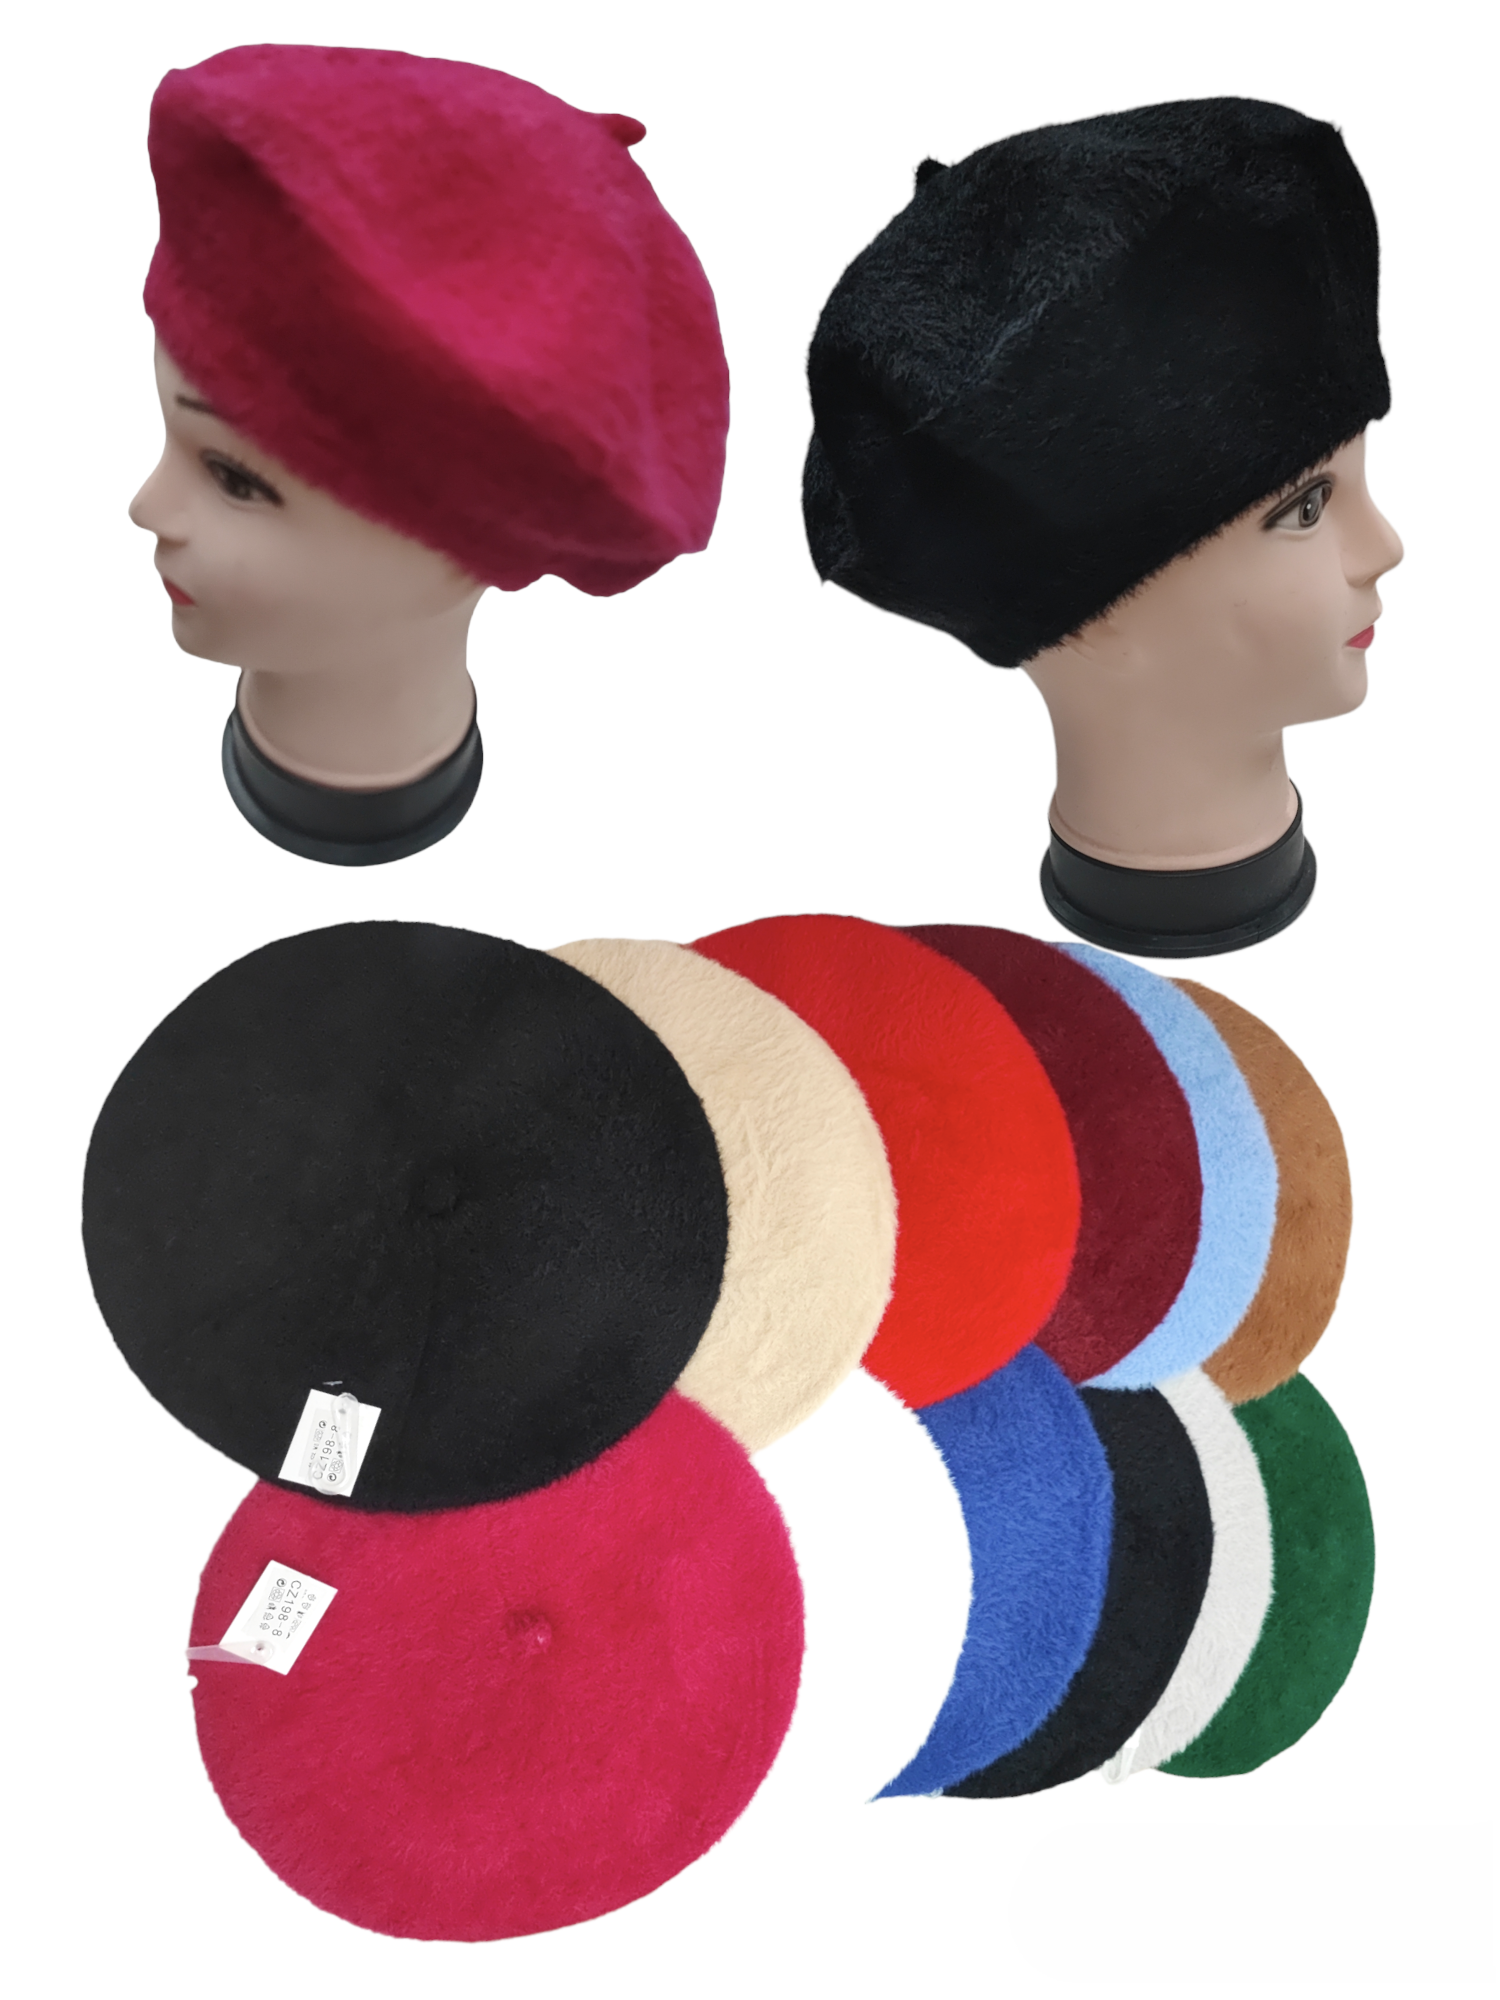 Mini chapeau de Nouvel An, couleurs assorties par 4,50 €